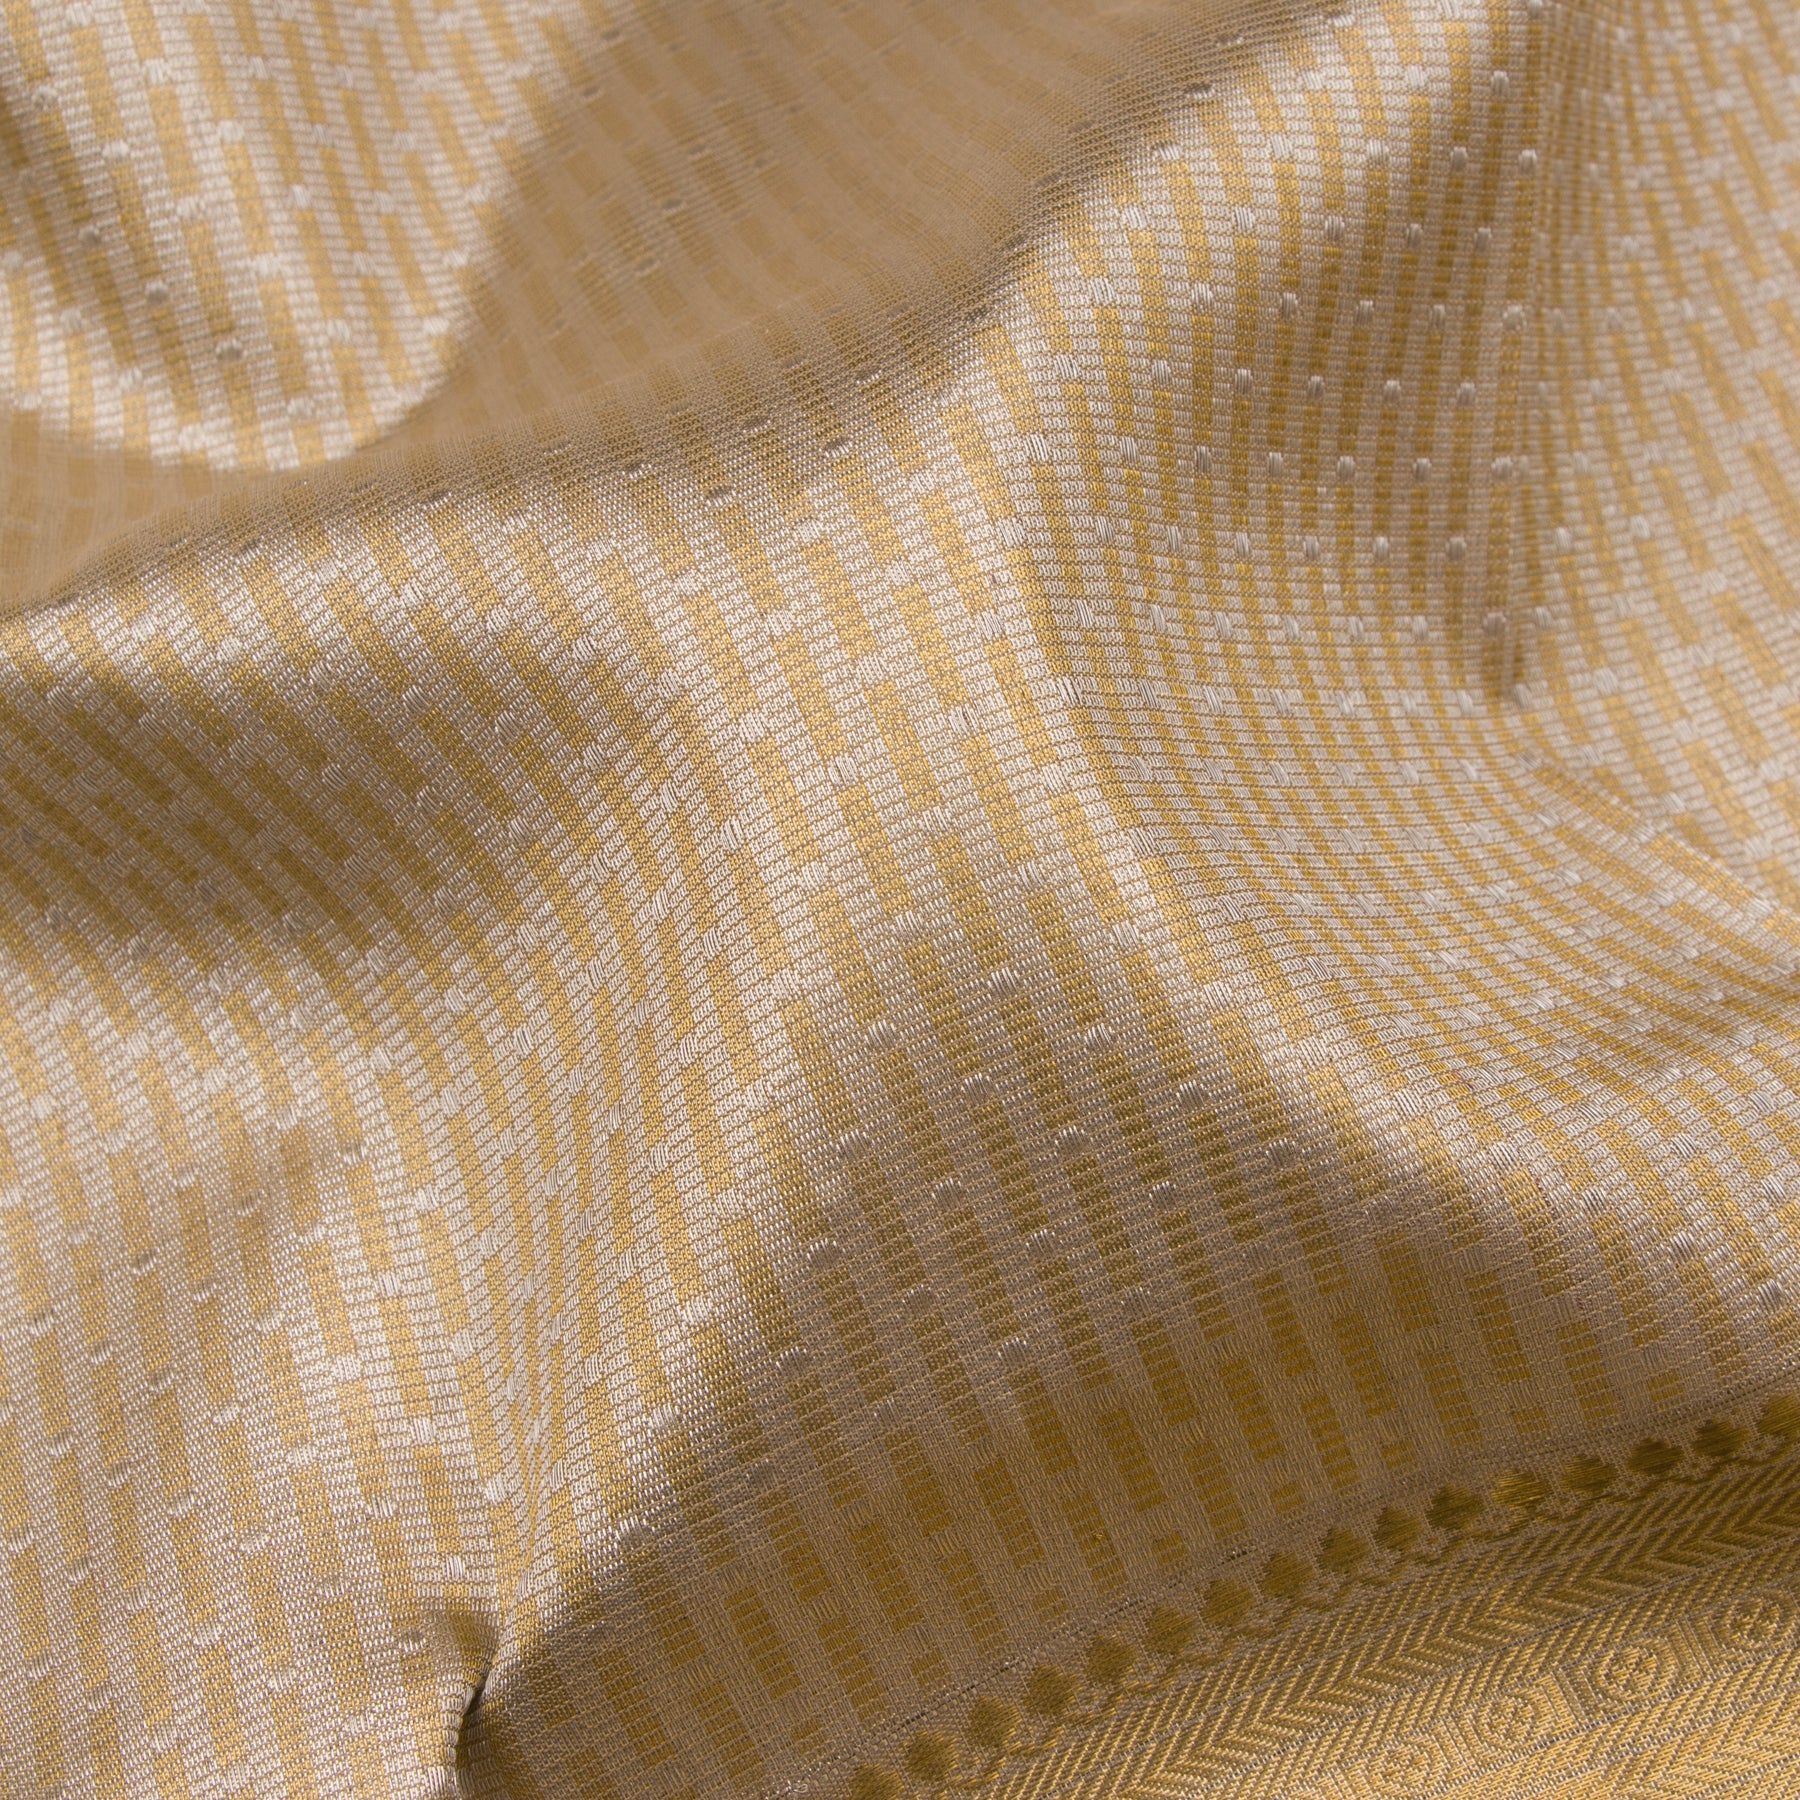 Kanakavalli Kanjivaram Silk Sari 22-110-HS001-10544 - Fabric View